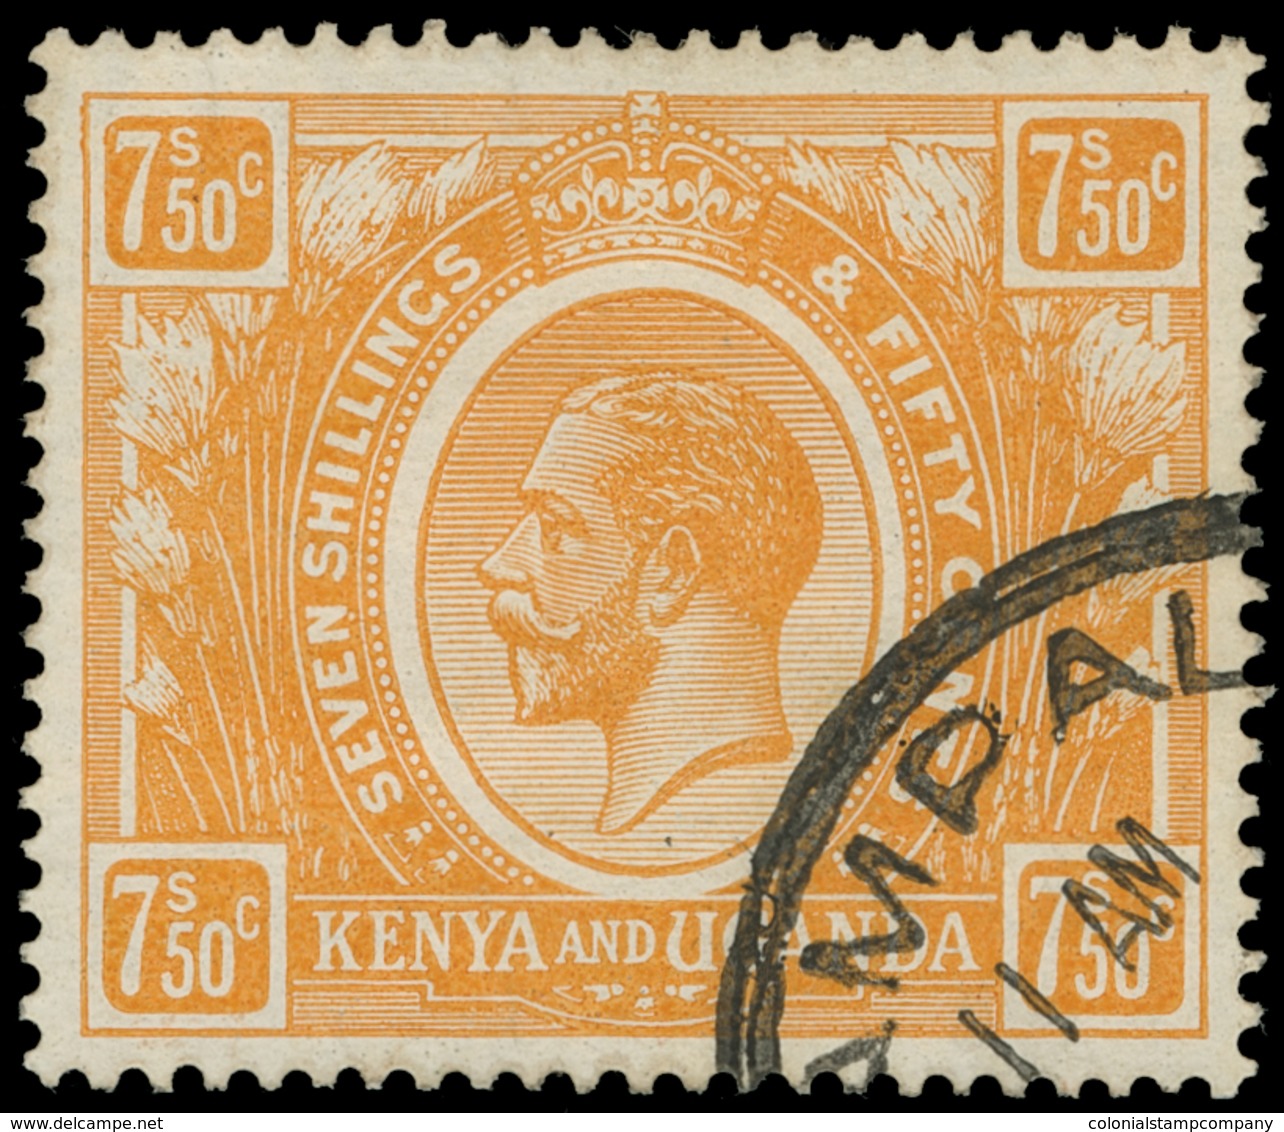 O Kenya, Uganda And Tanganyika - Lot No.756 - Protectorats D'Afrique Orientale Et D'Ouganda